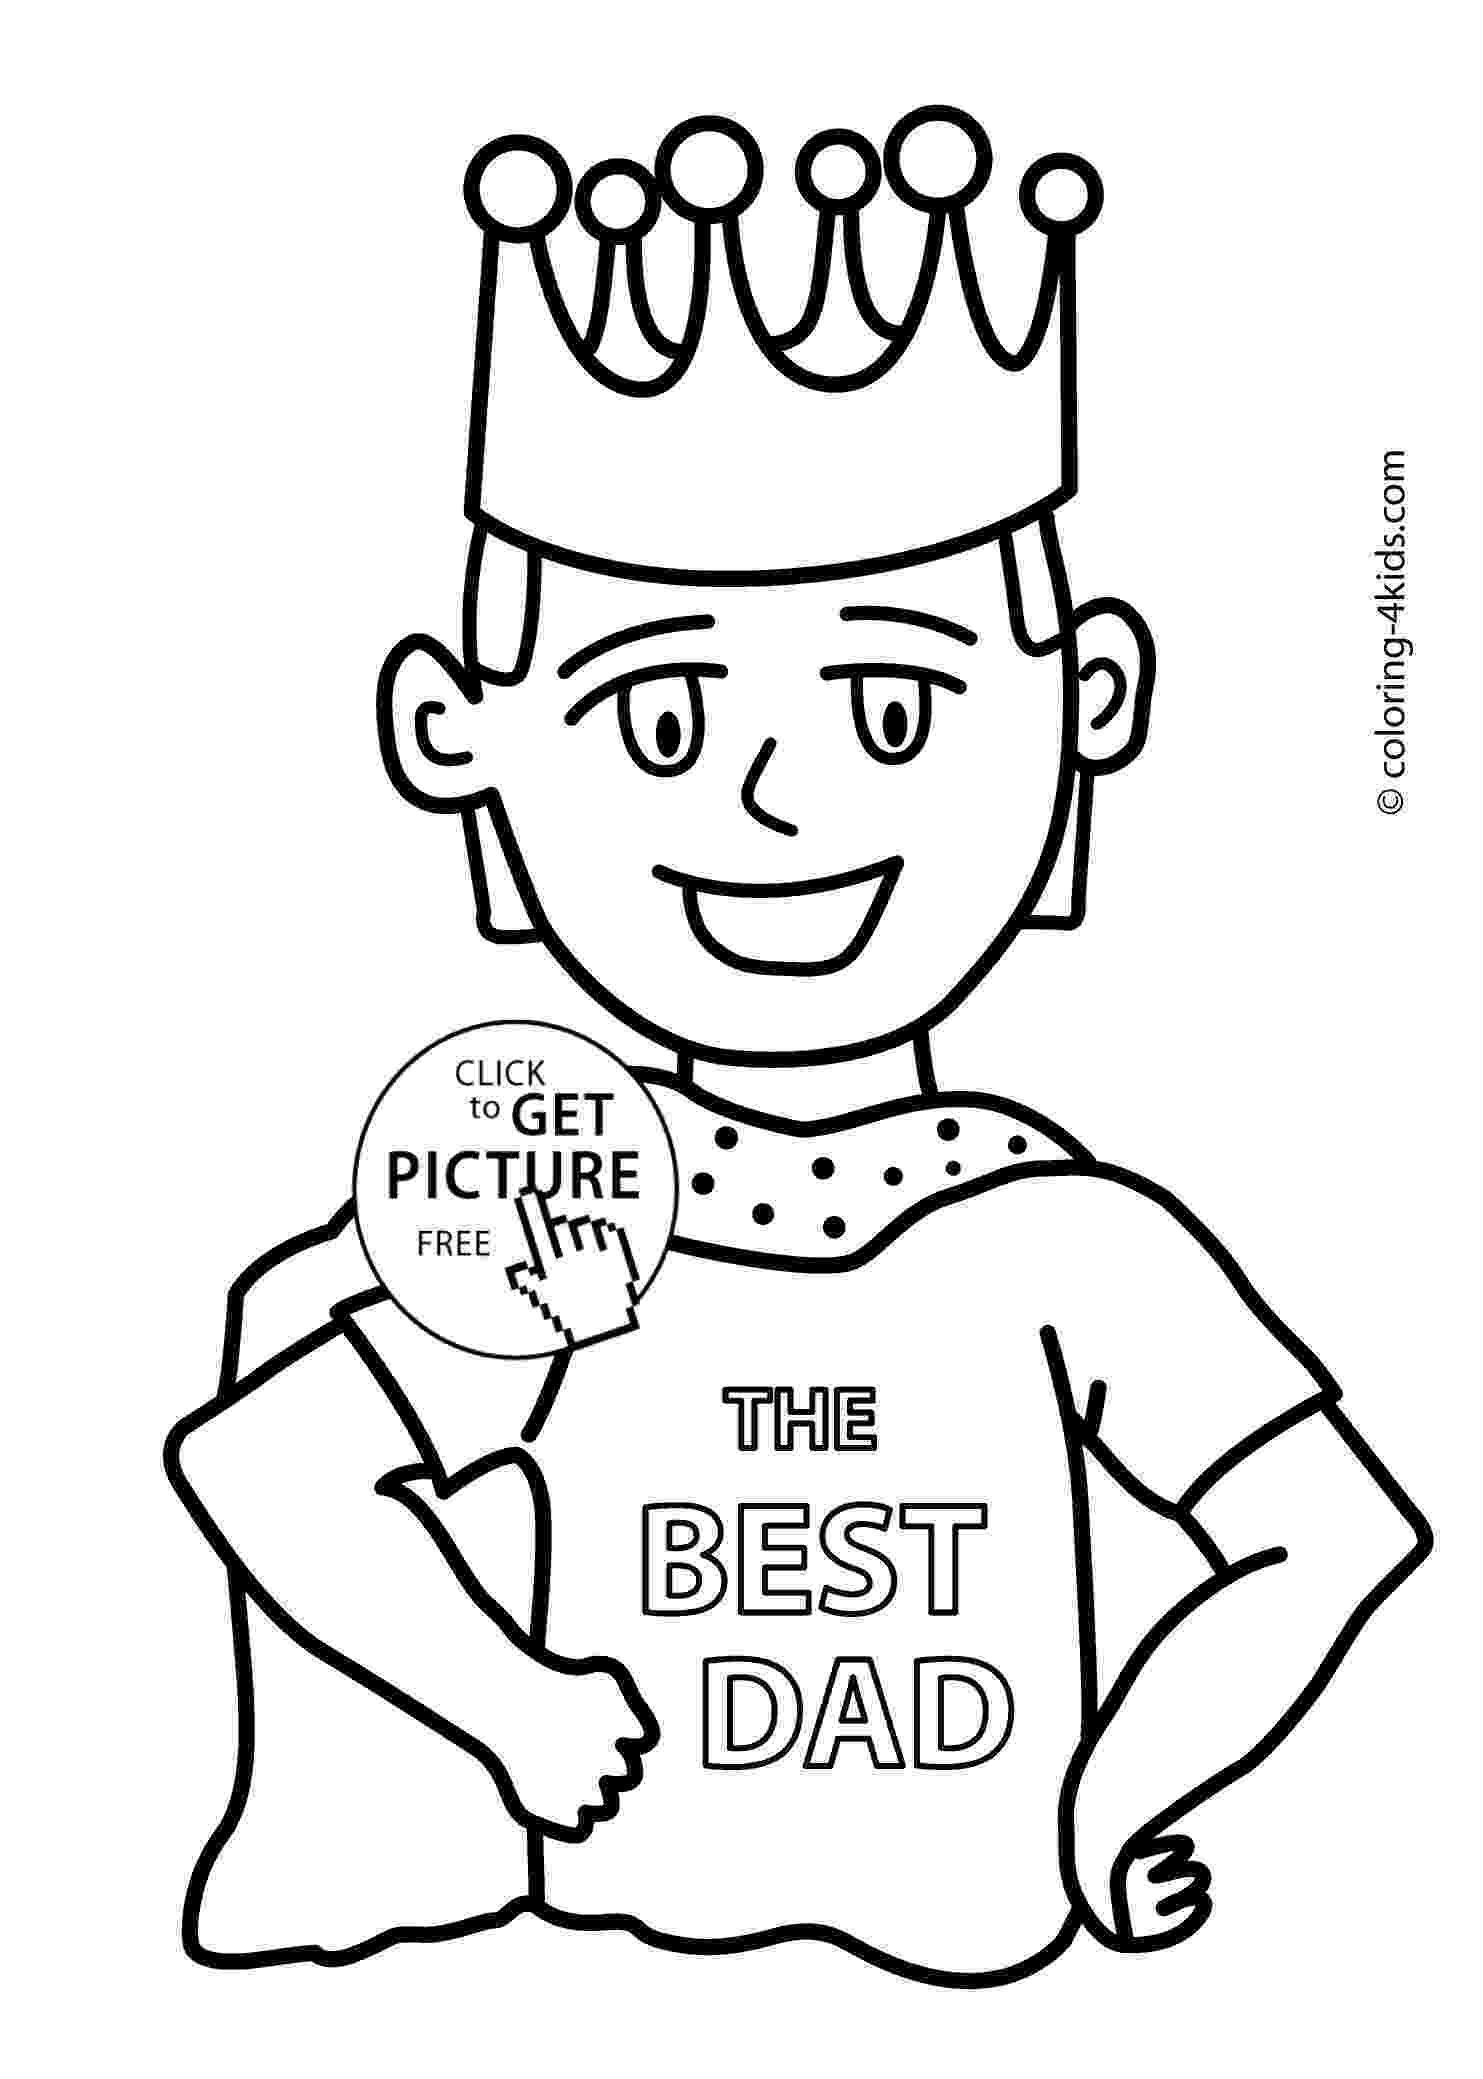 dad coloring pages dad coloring pages coloring pages to download and print coloring pages dad 